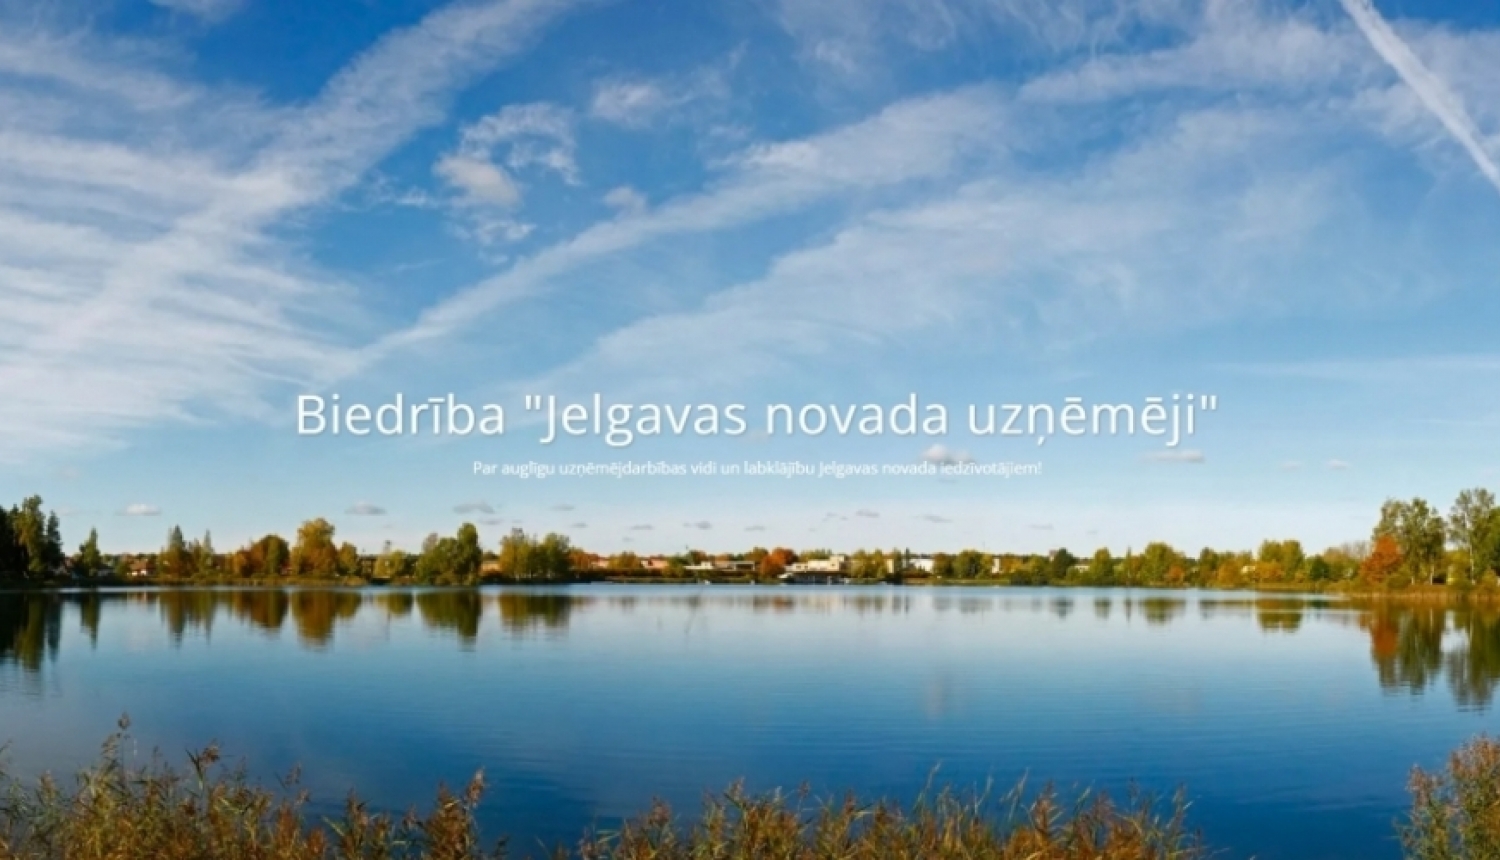 Biedrības “Jelgavas novada uzņēmēji” tikšanās 5.maijā